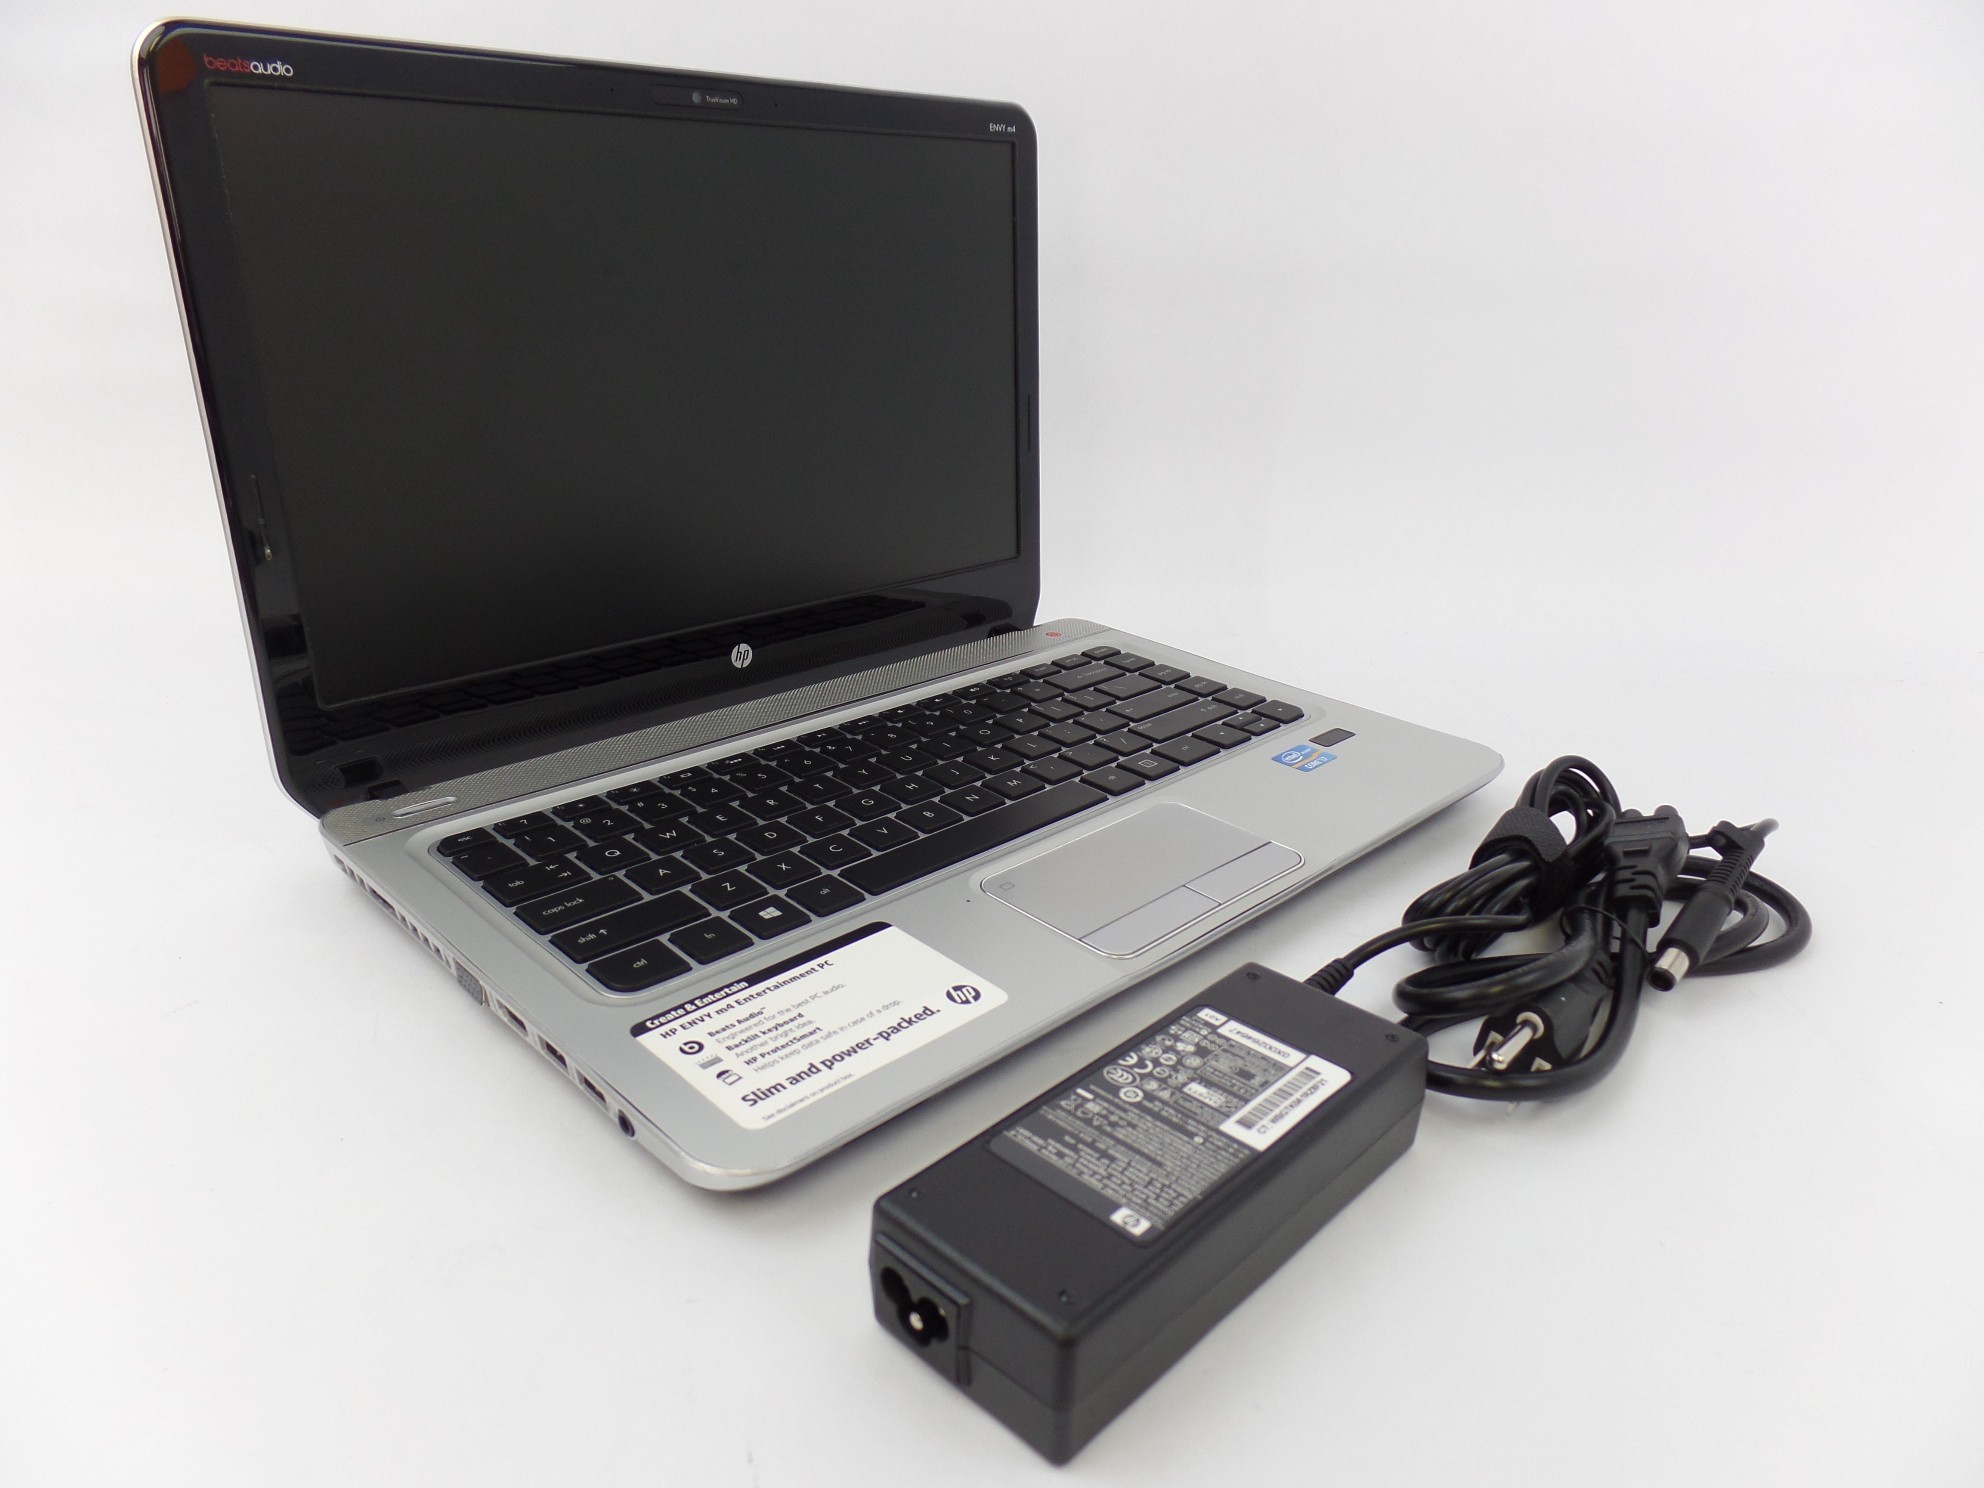 HP Envy m4-1015dx 14" HD Core i7-3632QM 2.2GHz 8GB 1TB HDD W10P Laptop